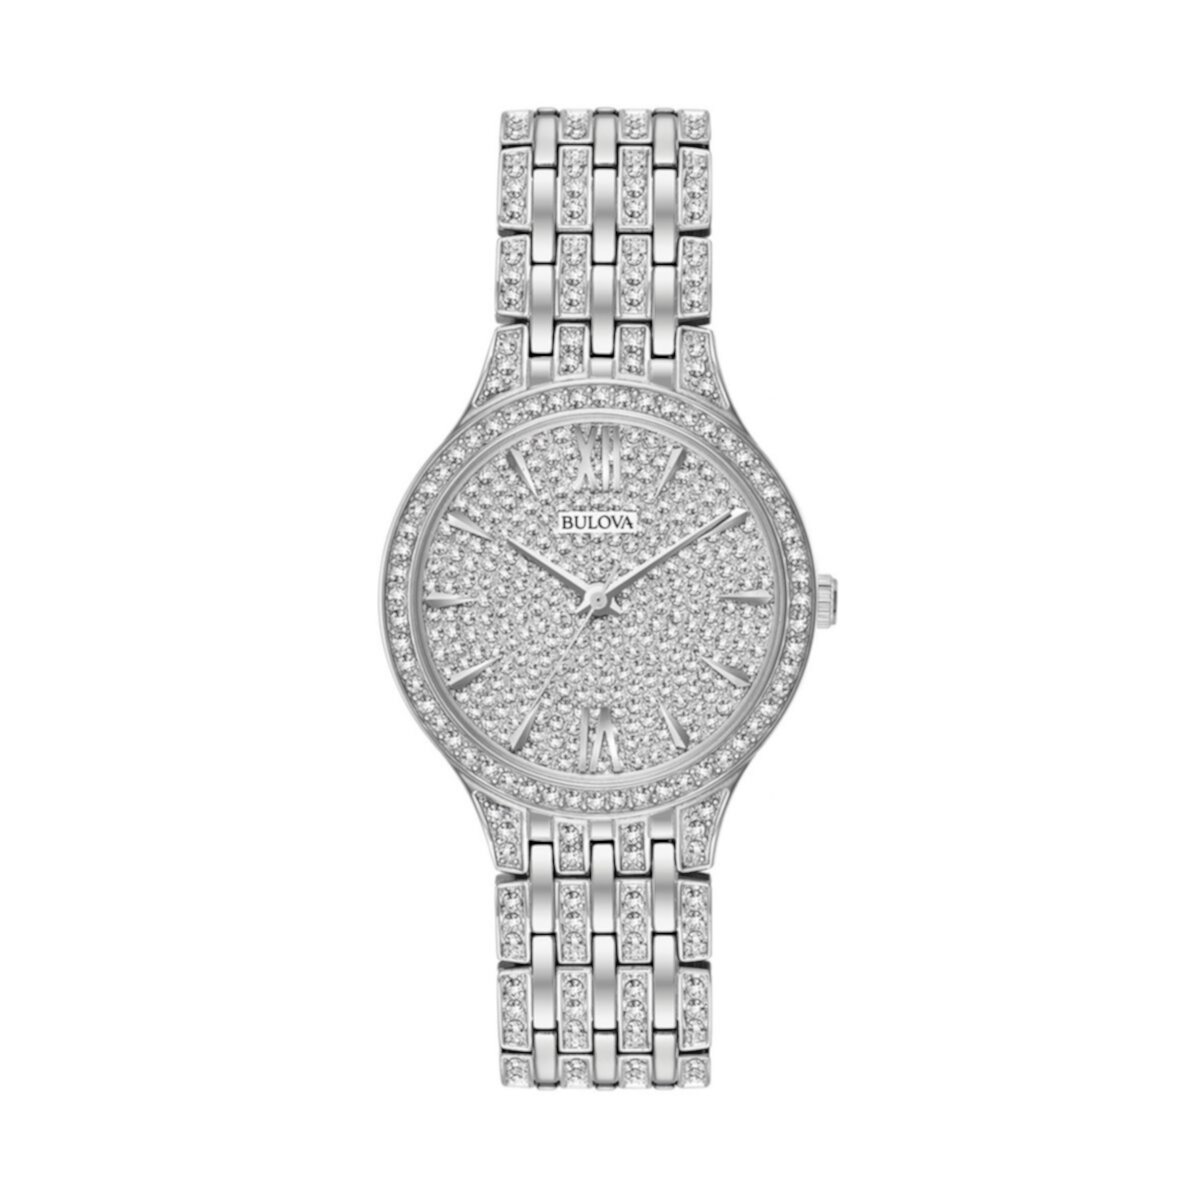 Женские часы Bulova с кристаллами из нержавеющей стали - 96L243 Bulova